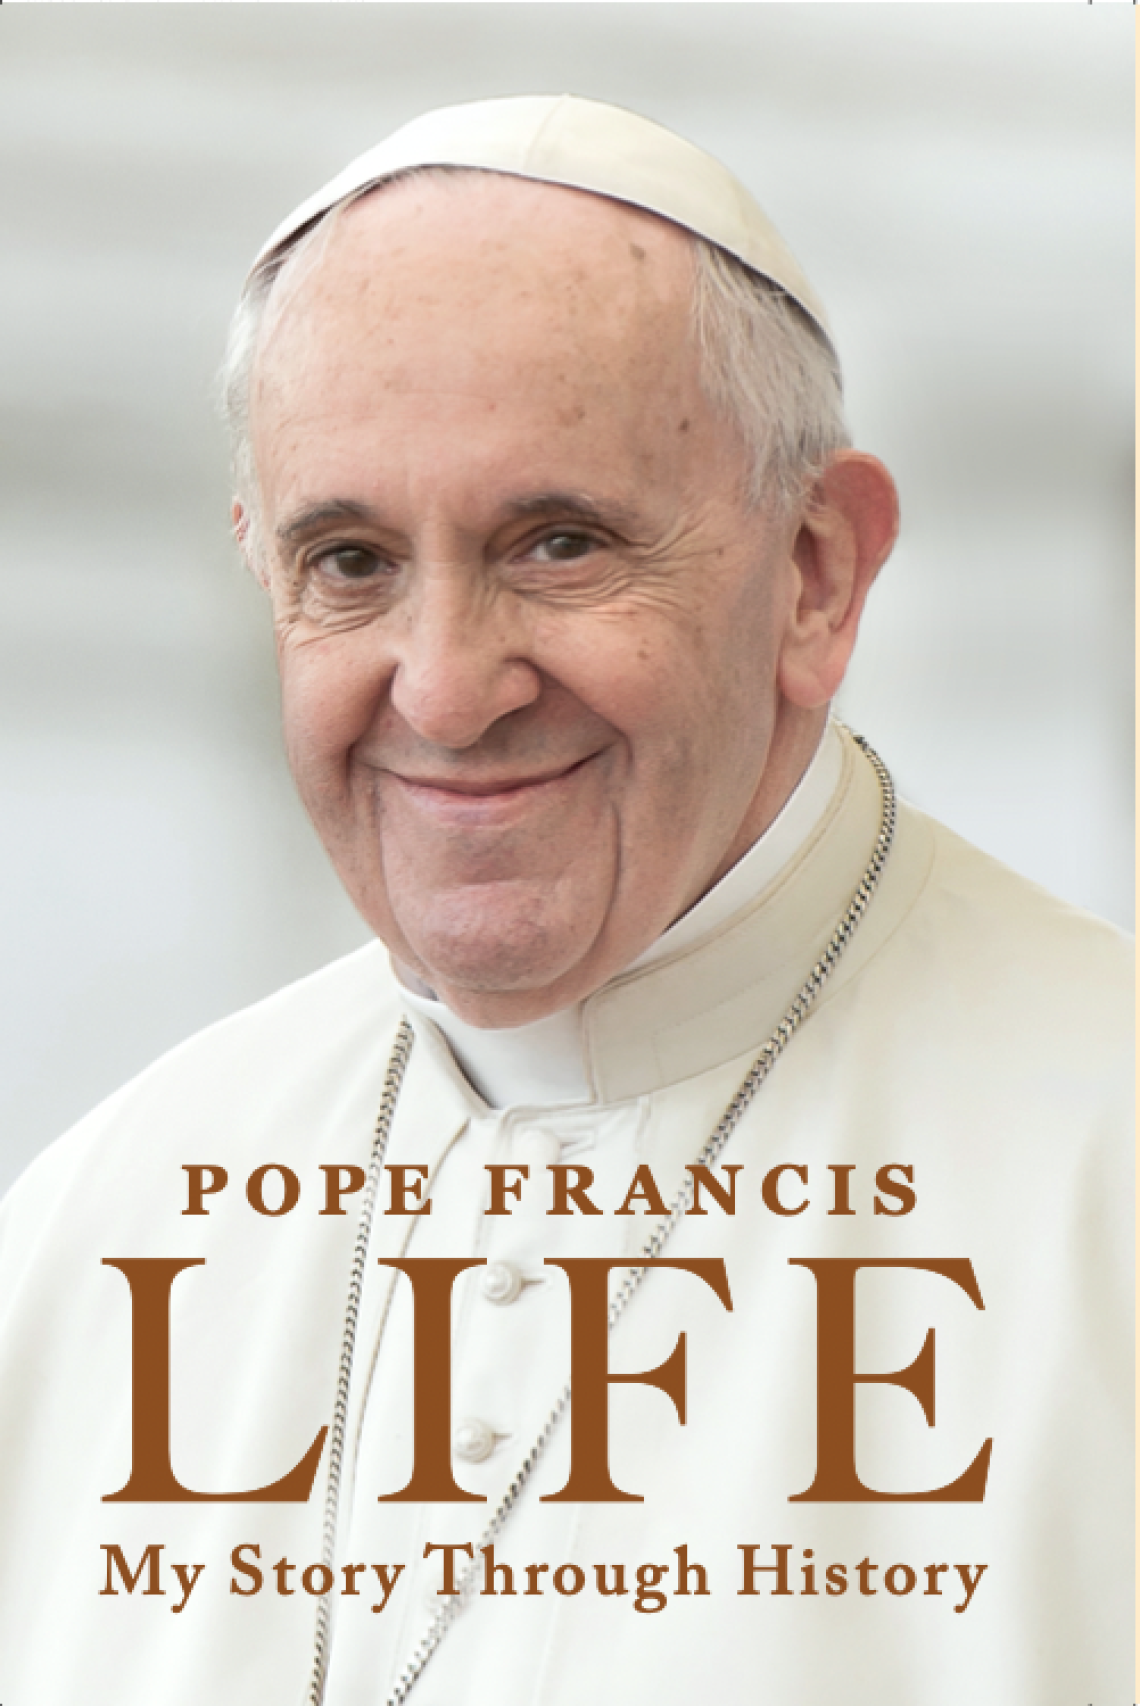 Le-nouveau-livre-du-pape-Francois-porte-sa-touche-personnelle